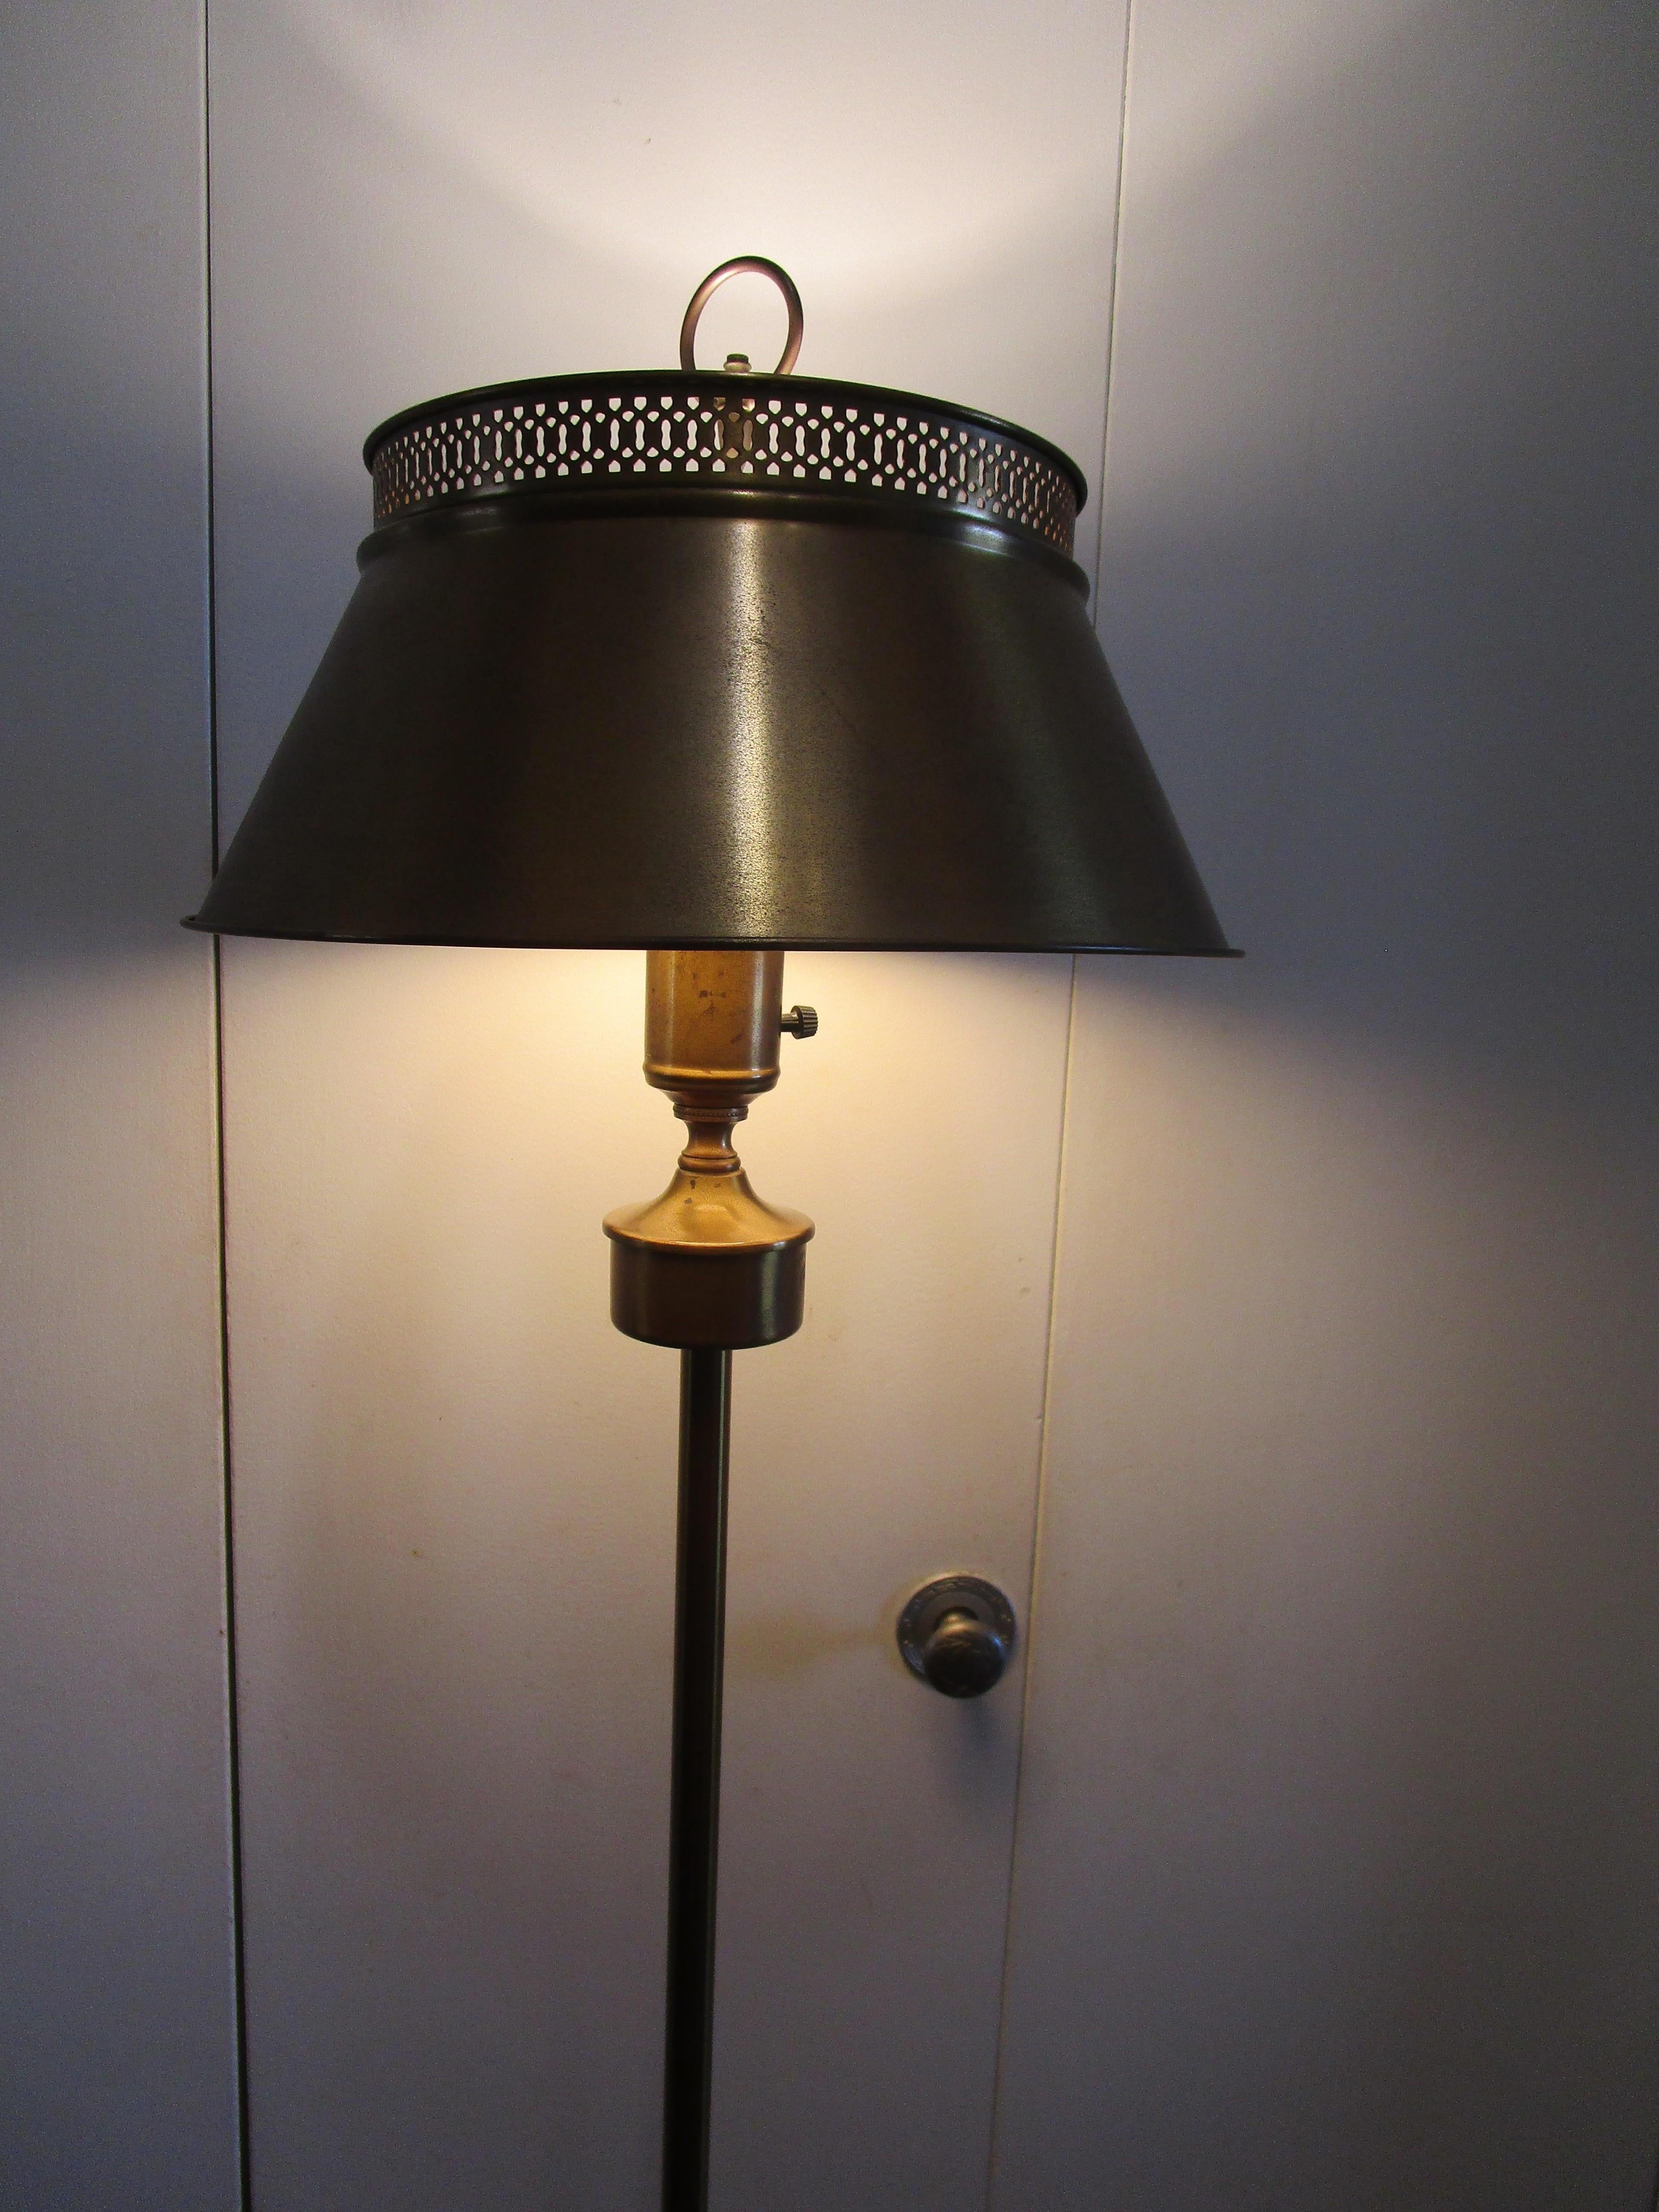 vintage floor lamp with metal shade